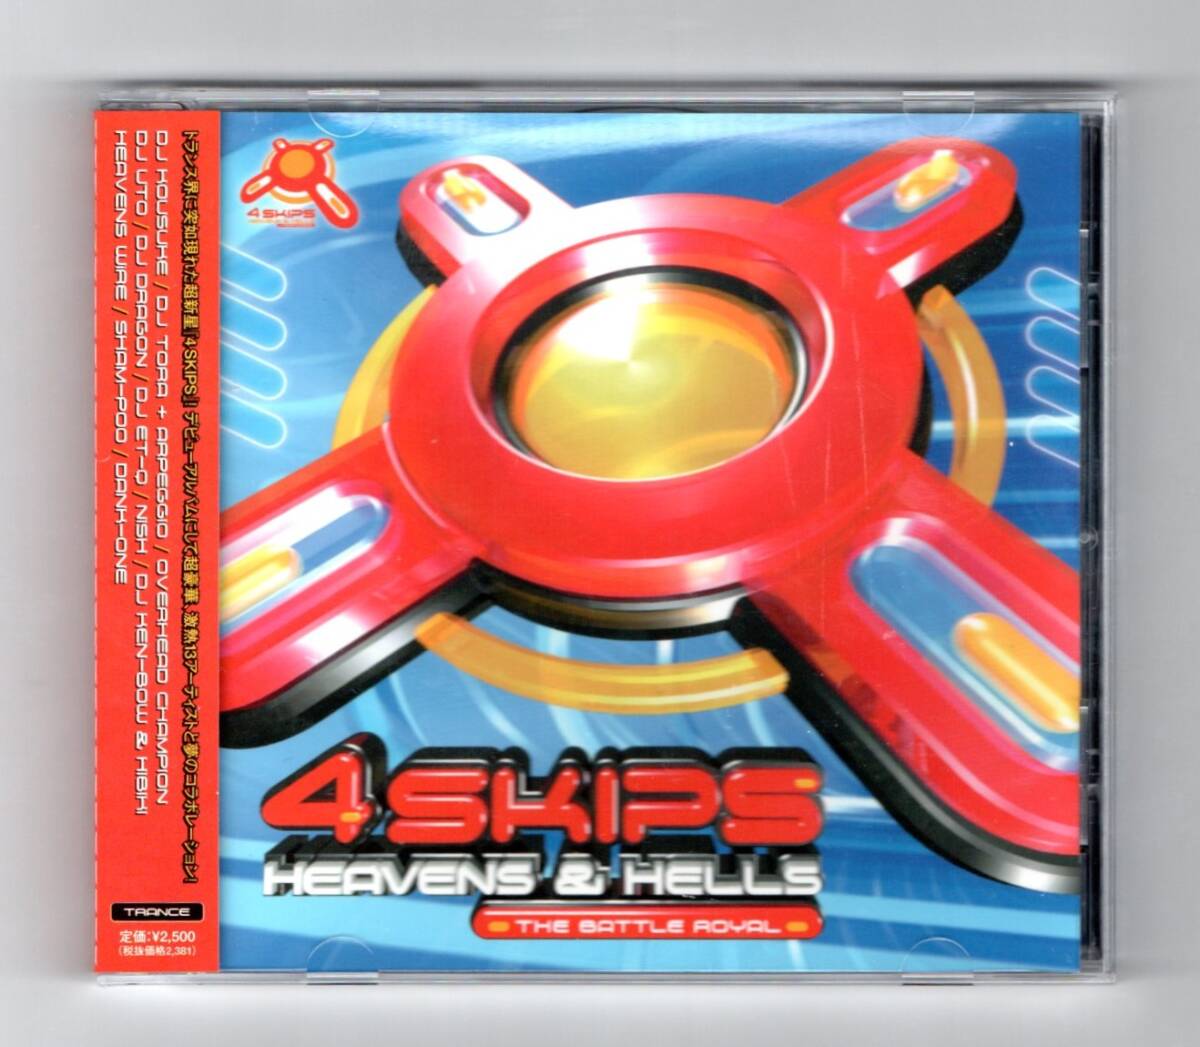 Σ フォー スキップス4 SKIPS 13アーティスト コレボレーション 17曲入 トランス CD/OVERHEAD CHAMPION DJ TORA KOUSUKE TSUKASA NISH UTO_※プラケースは交換済みです。